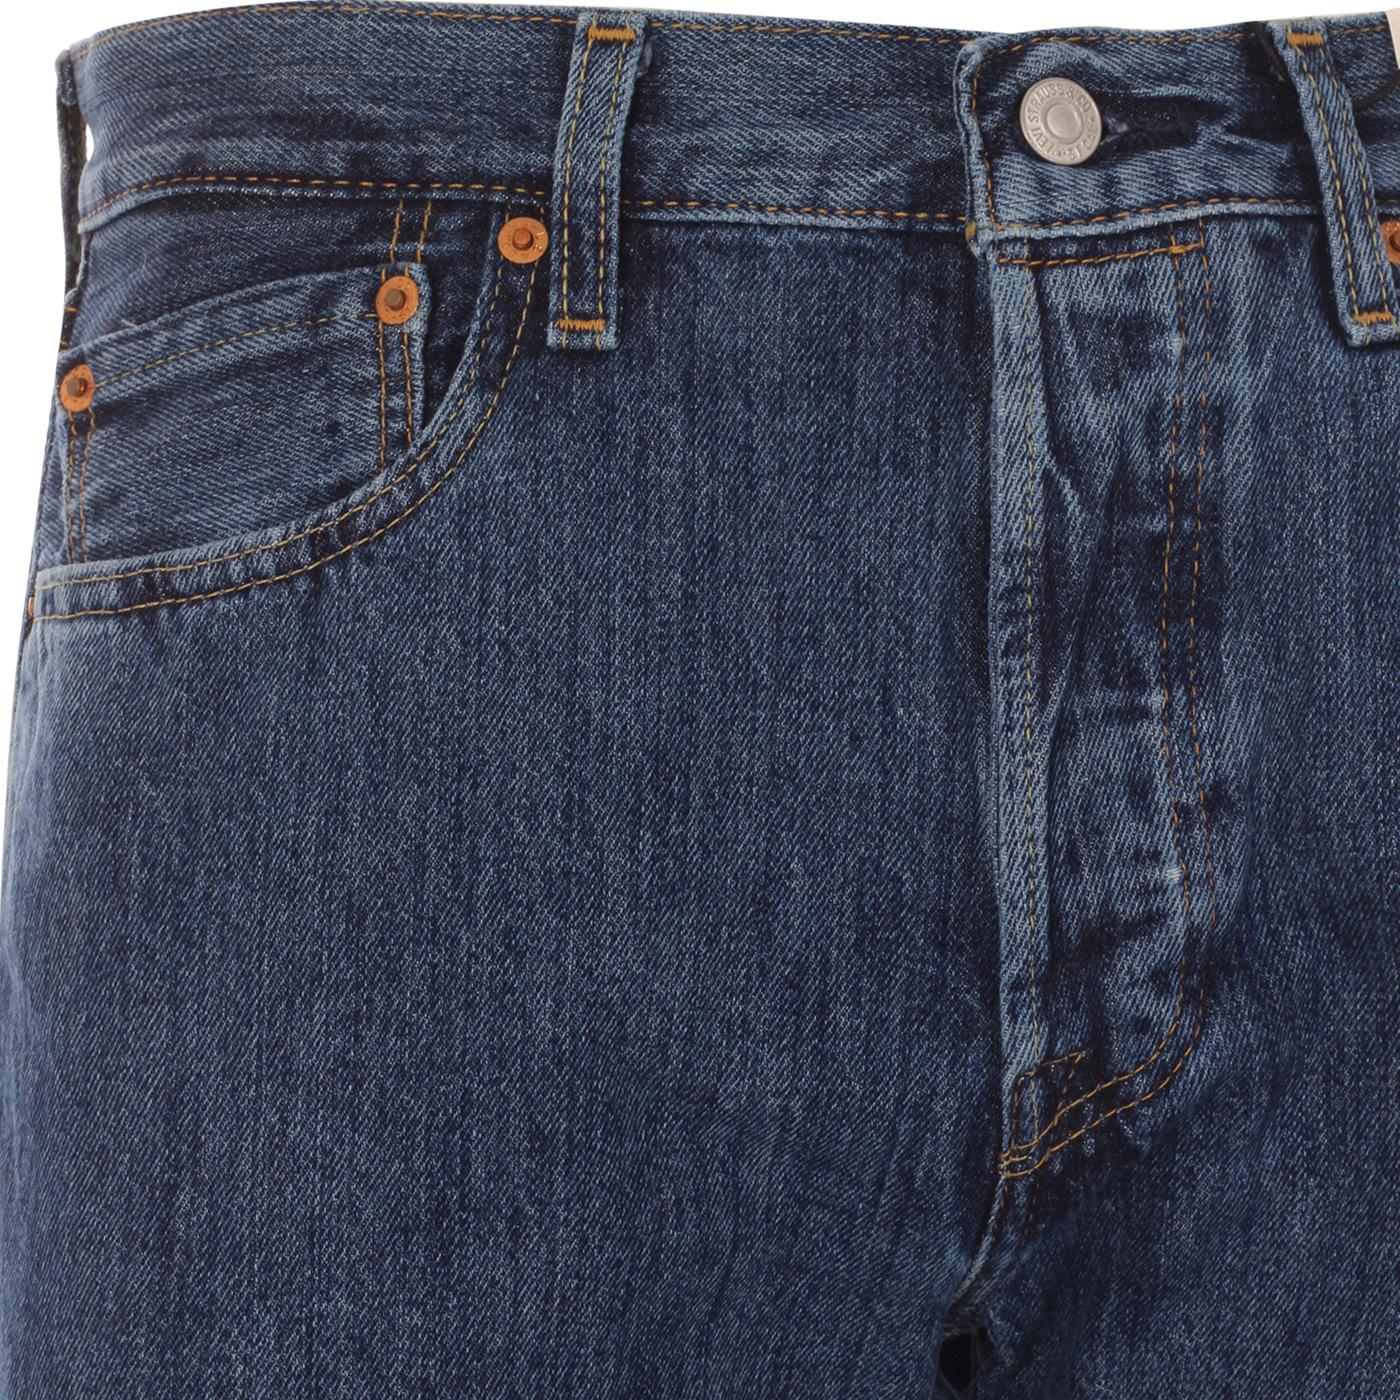 LEVI'S® 501® Original Straight Fit Retro Jeans in Stonewash